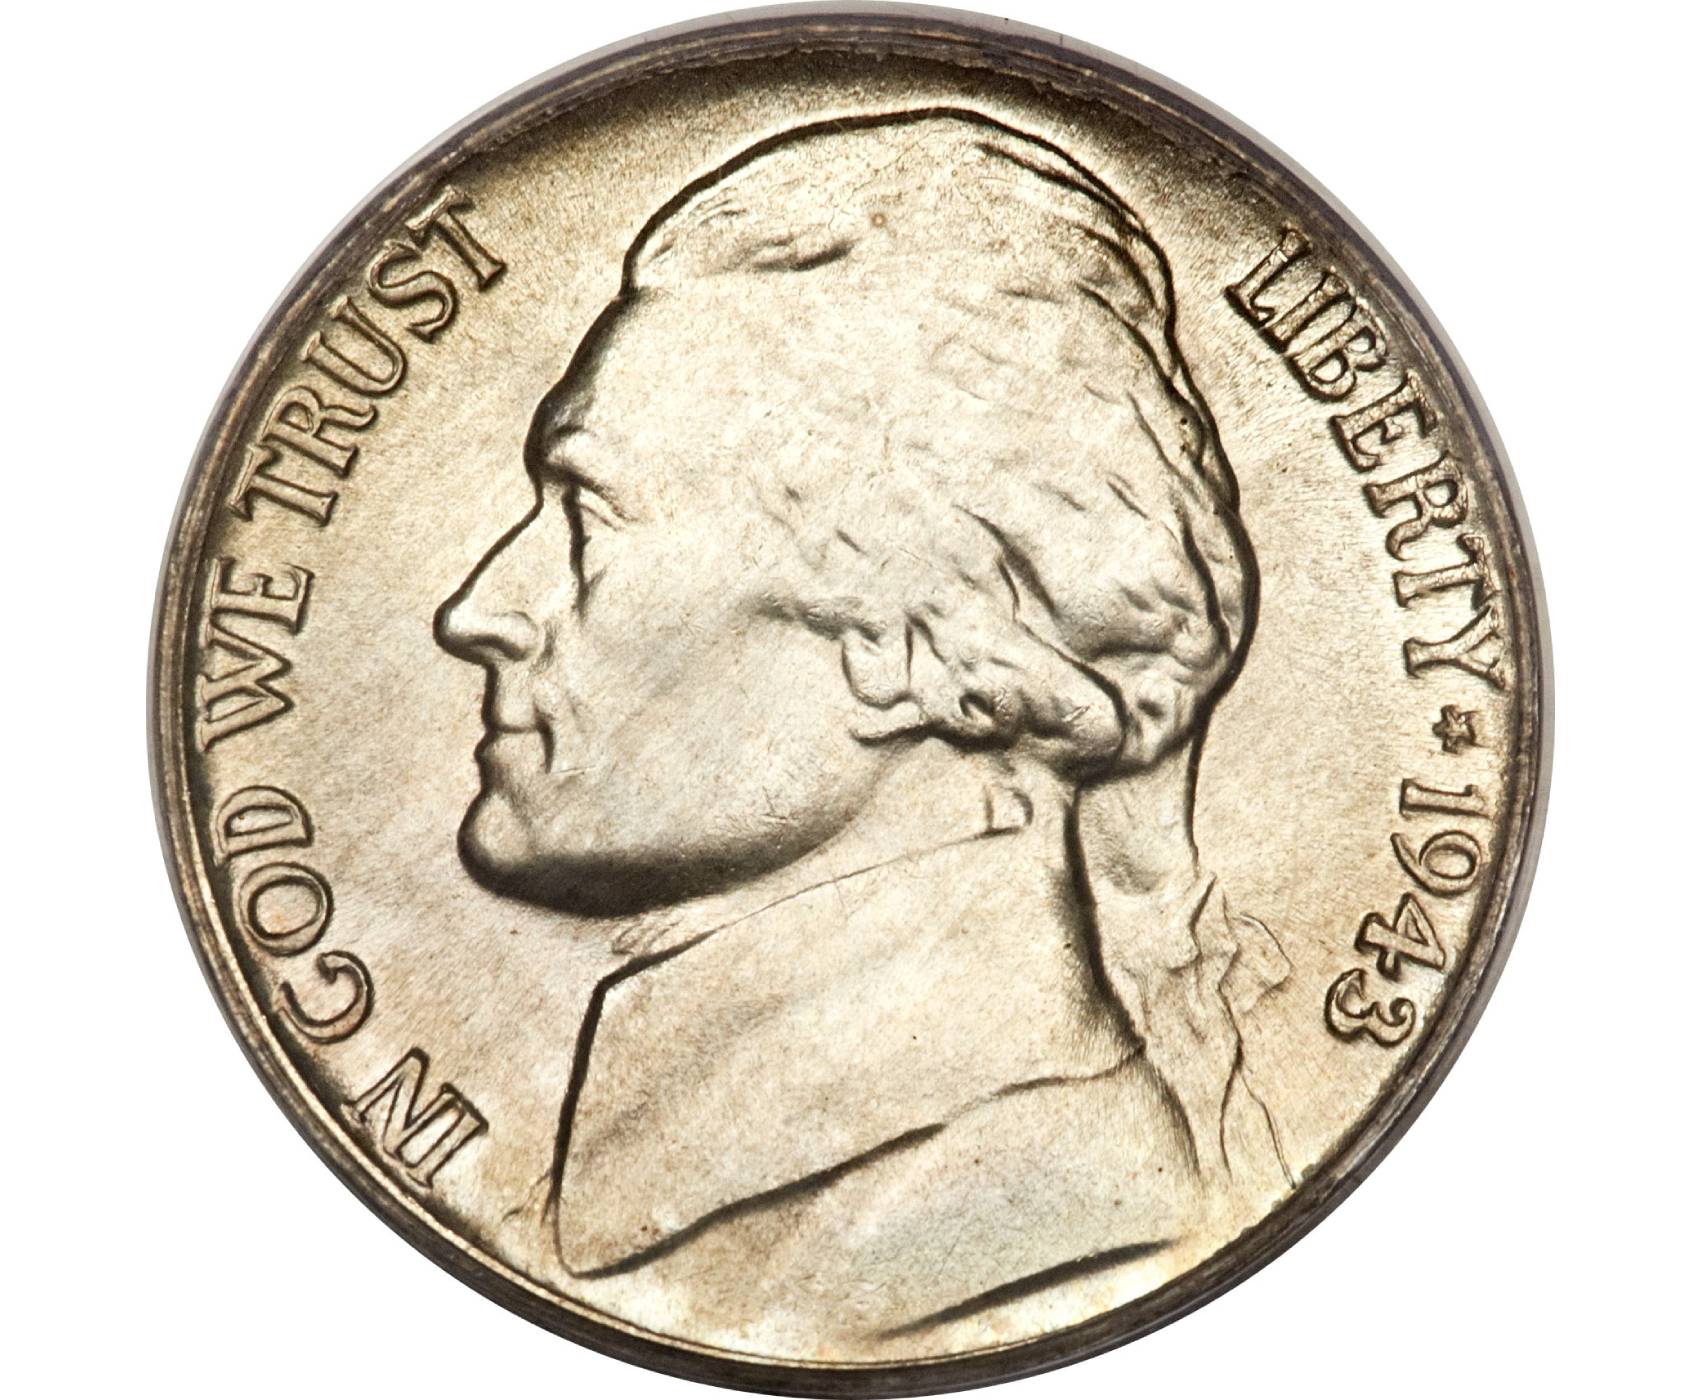 EEUU | ¿Cómo reconocer la moneda de cinco centavos de 1998 que puede valer hasta $2.000?